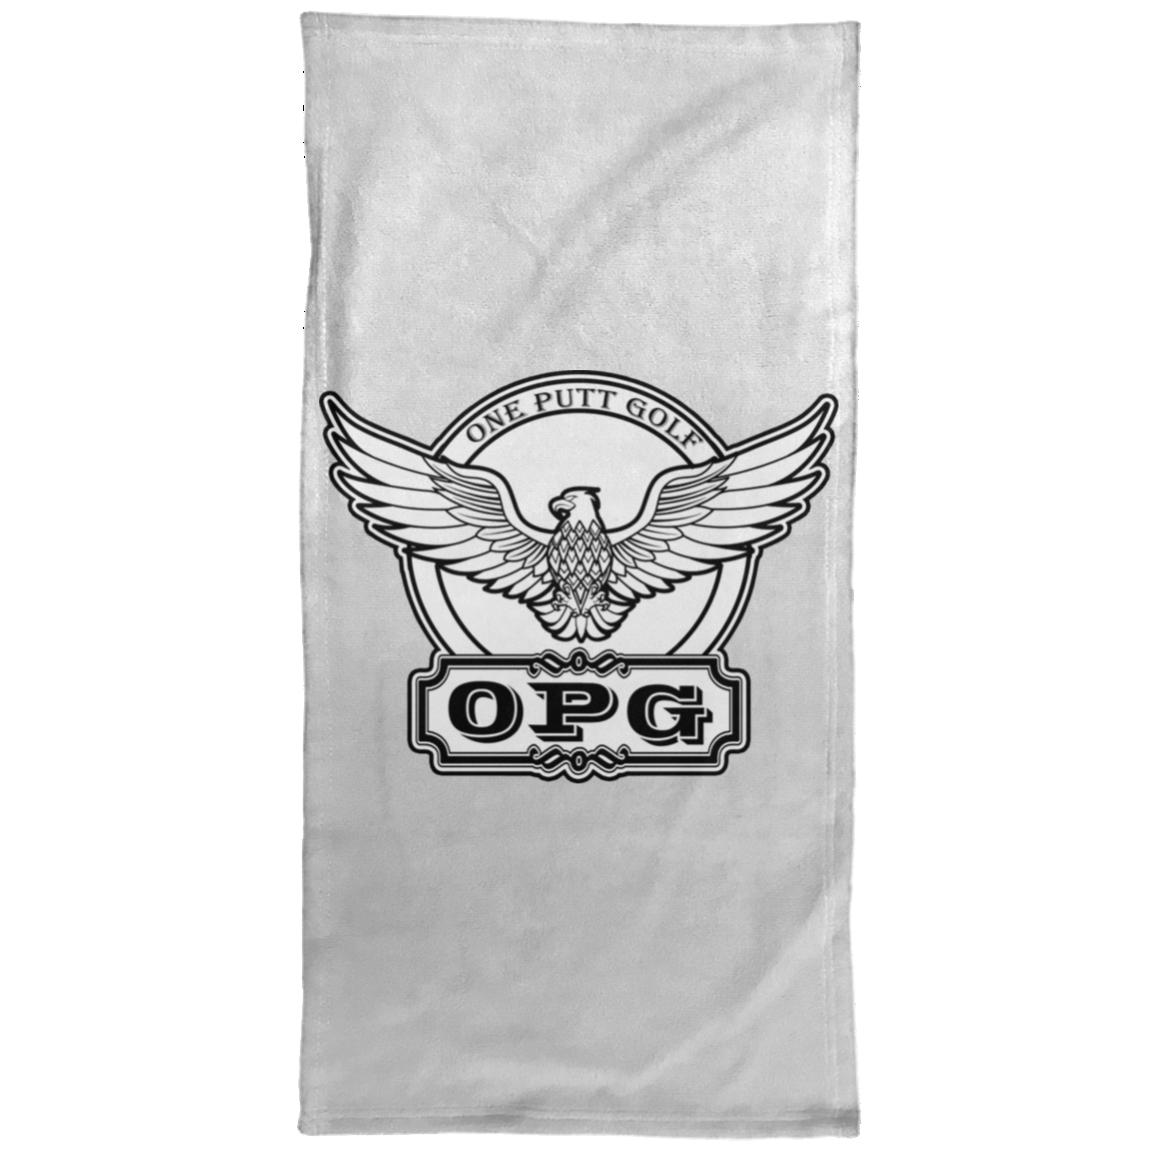 OPG Custom Design #00. OPG - One Putt Golf.  Front and Back Design. Hand Towel - 15x30